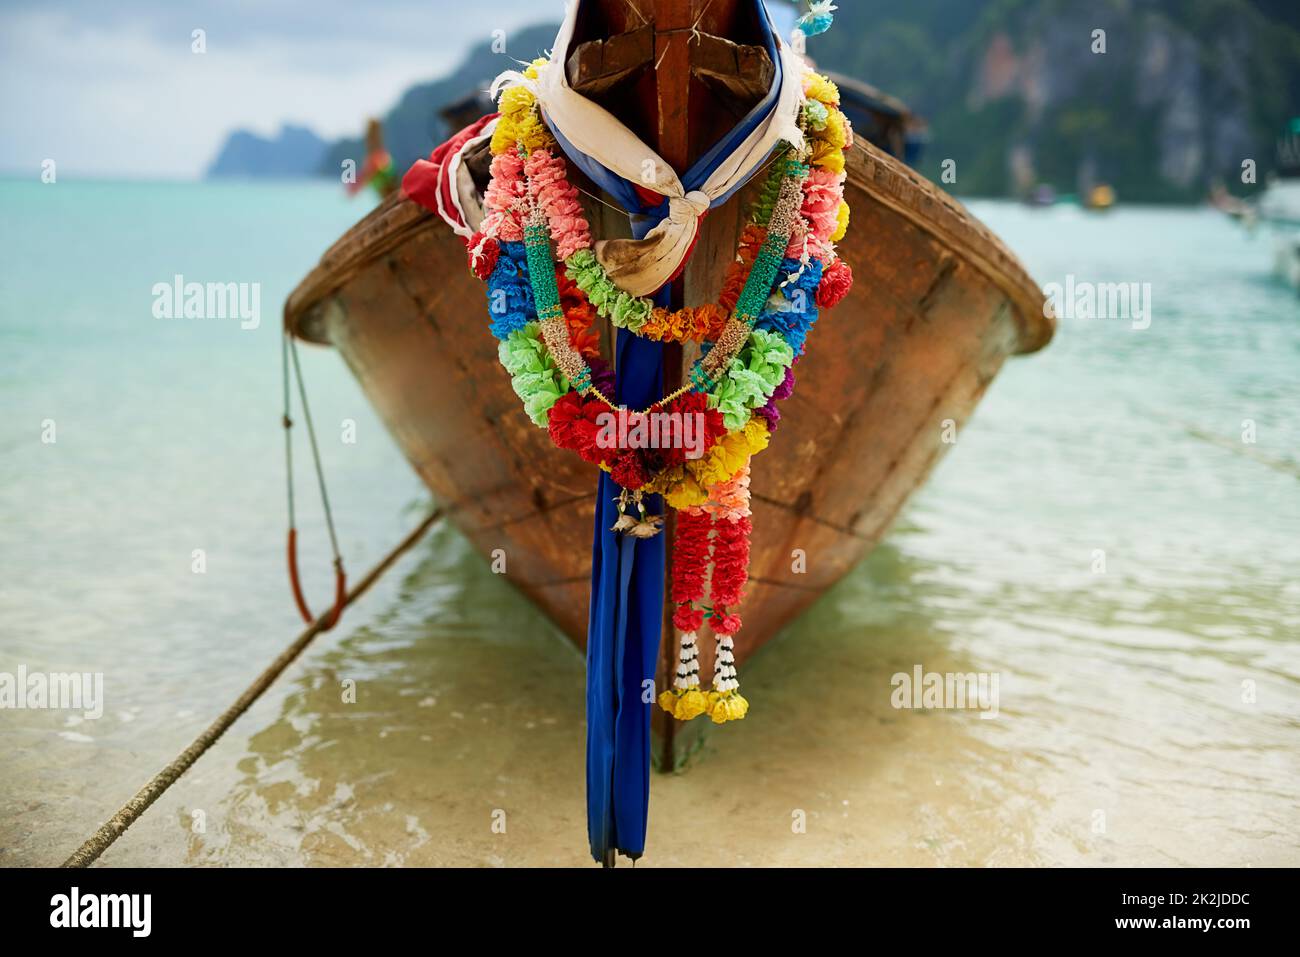 La vostra esperienza di barca isola vi aspetta.... Scatto di una barca sull'acqua con una ghirlanda floreale colorata appesa ad essa. Foto Stock